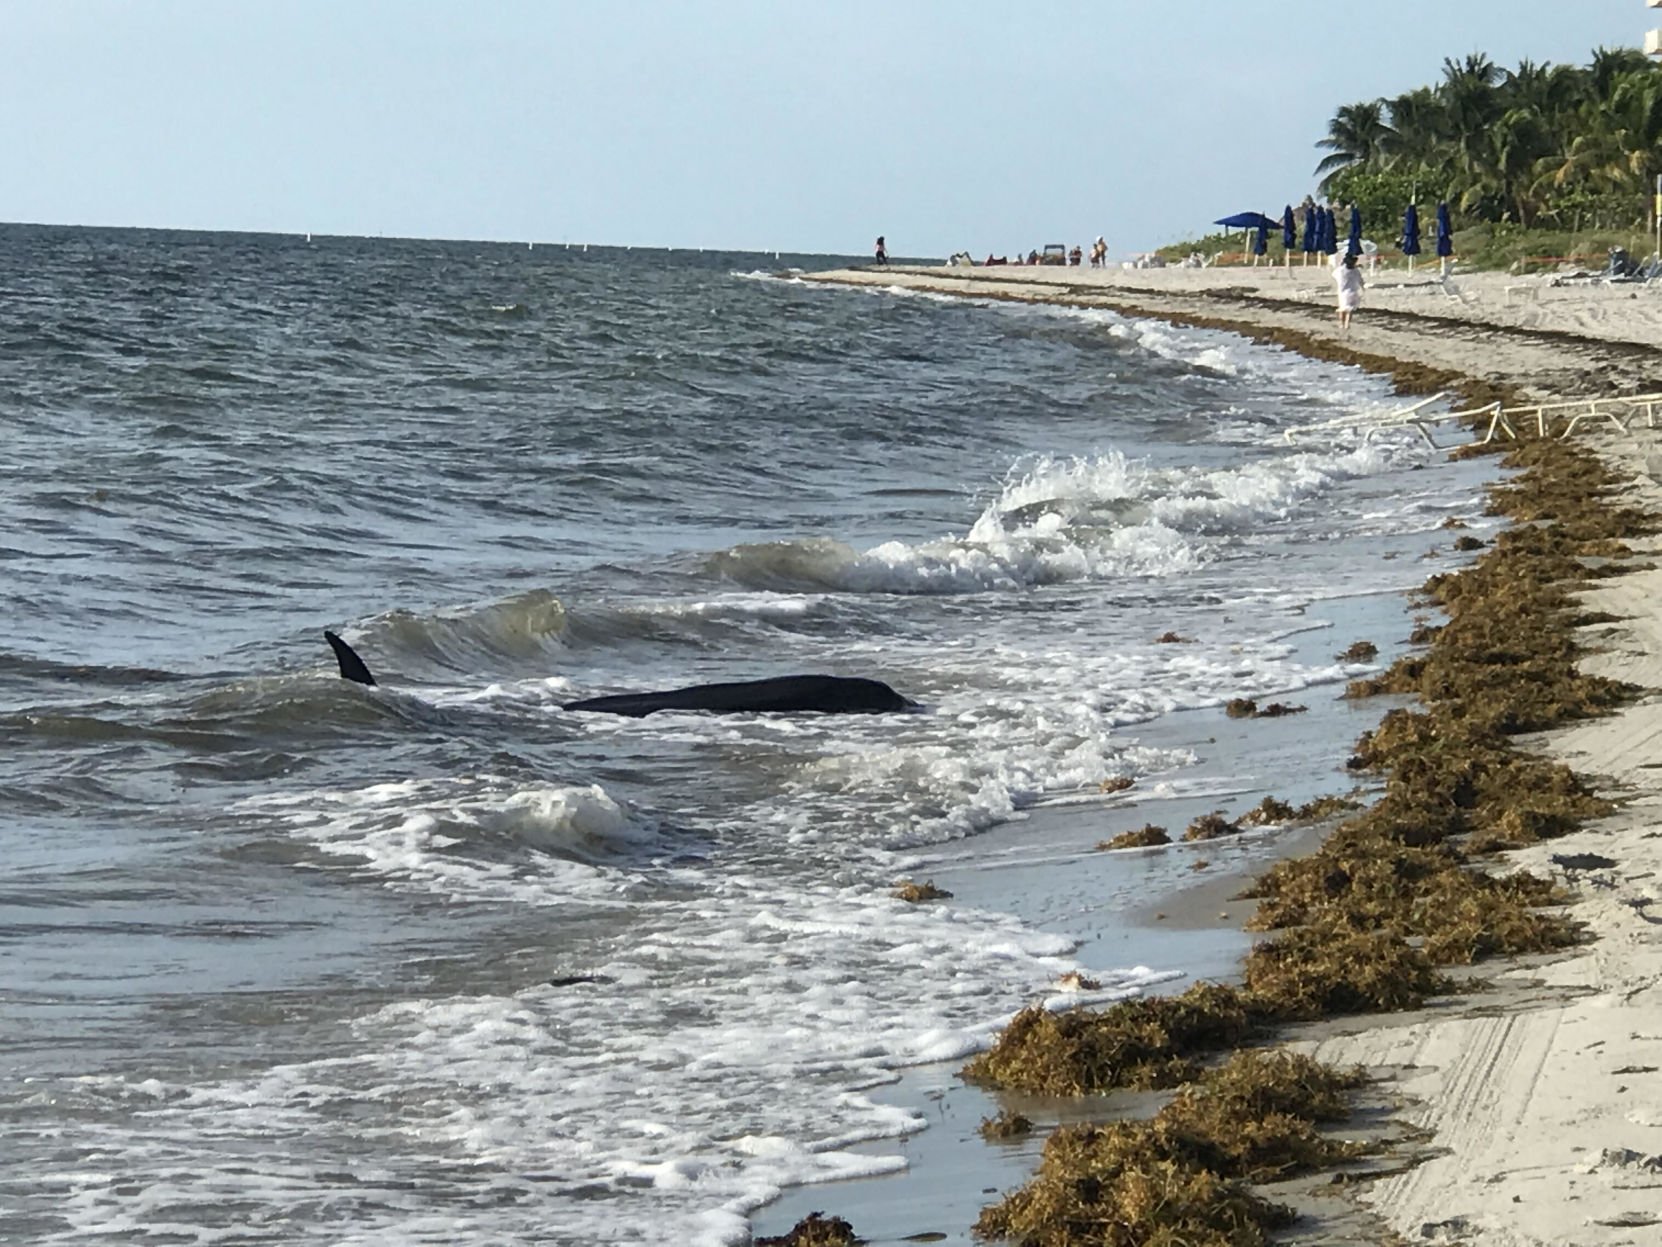 Rare dwarf sperm whale found beached near the Ocean Club | News